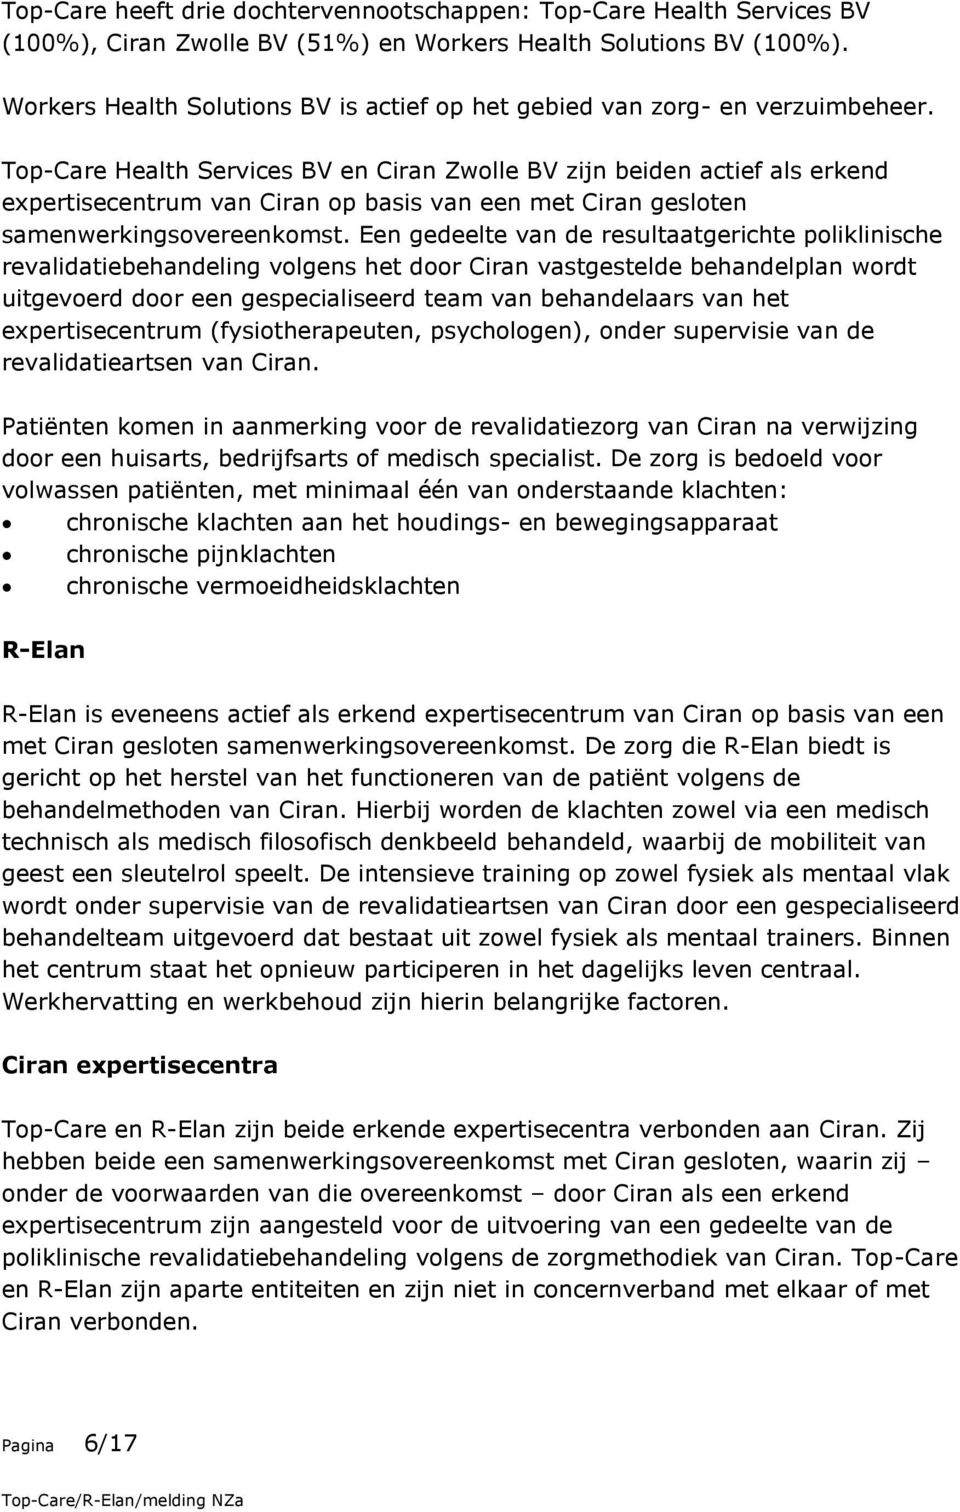 Top-Care Health Services BV en Ciran Zwolle BV zijn beiden actief als erkend expertisecentrum van Ciran op basis van een met Ciran gesloten samenwerkingsovereenkomst.